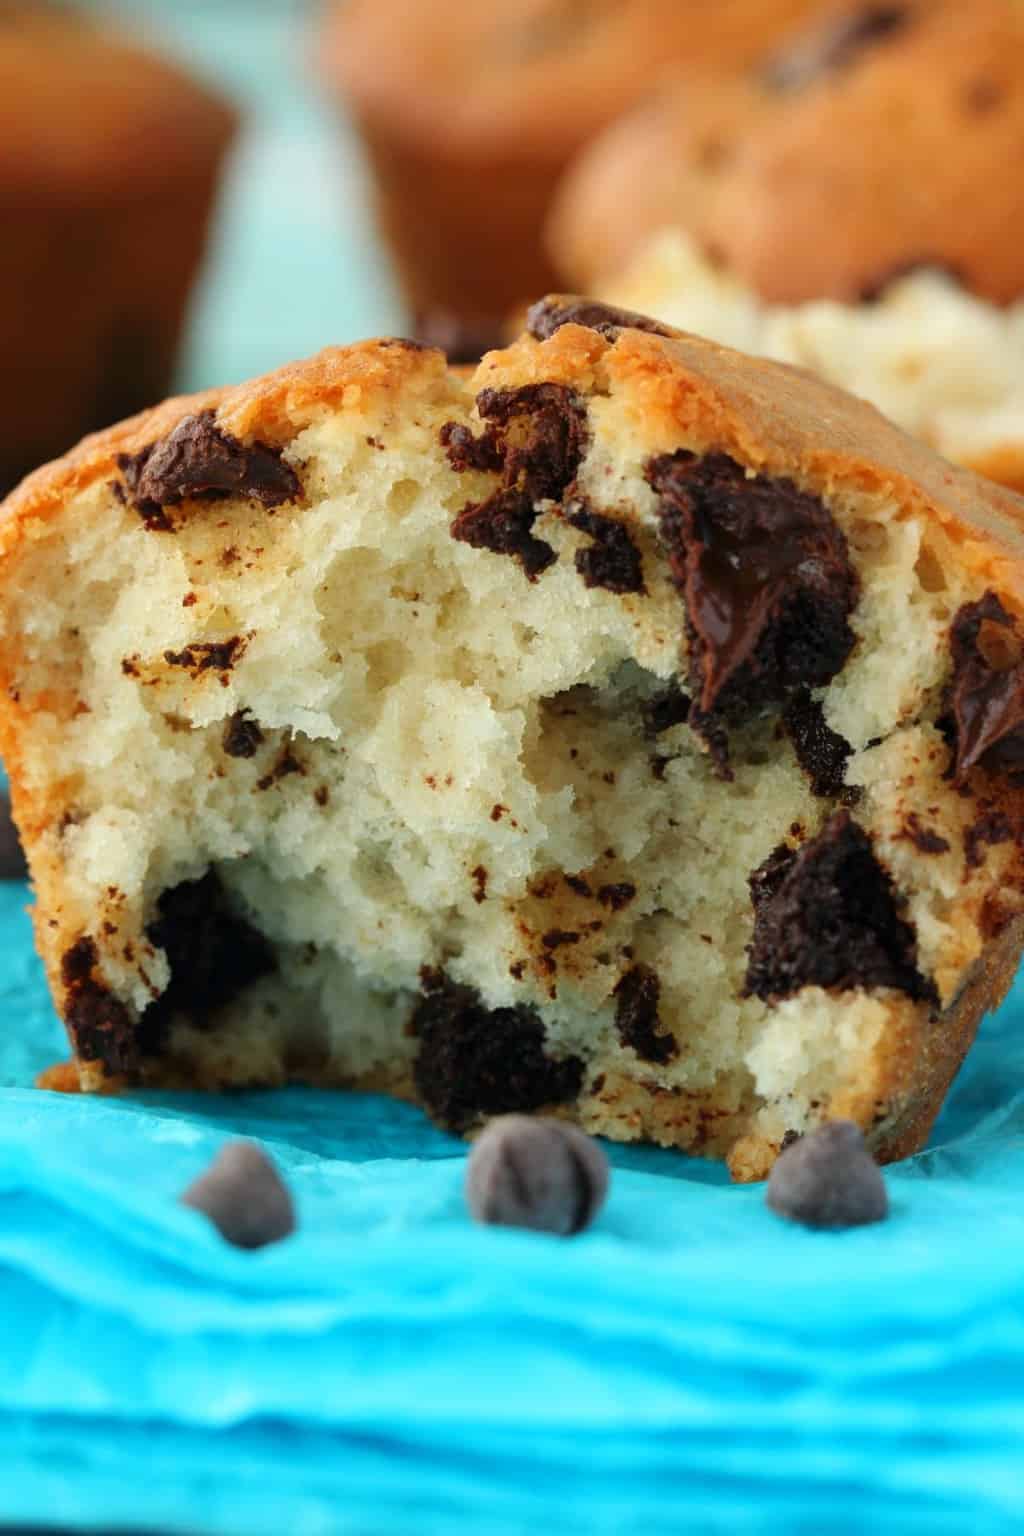  Muffin al cioccolato vegan rotto a metà per mostrare il centro. 